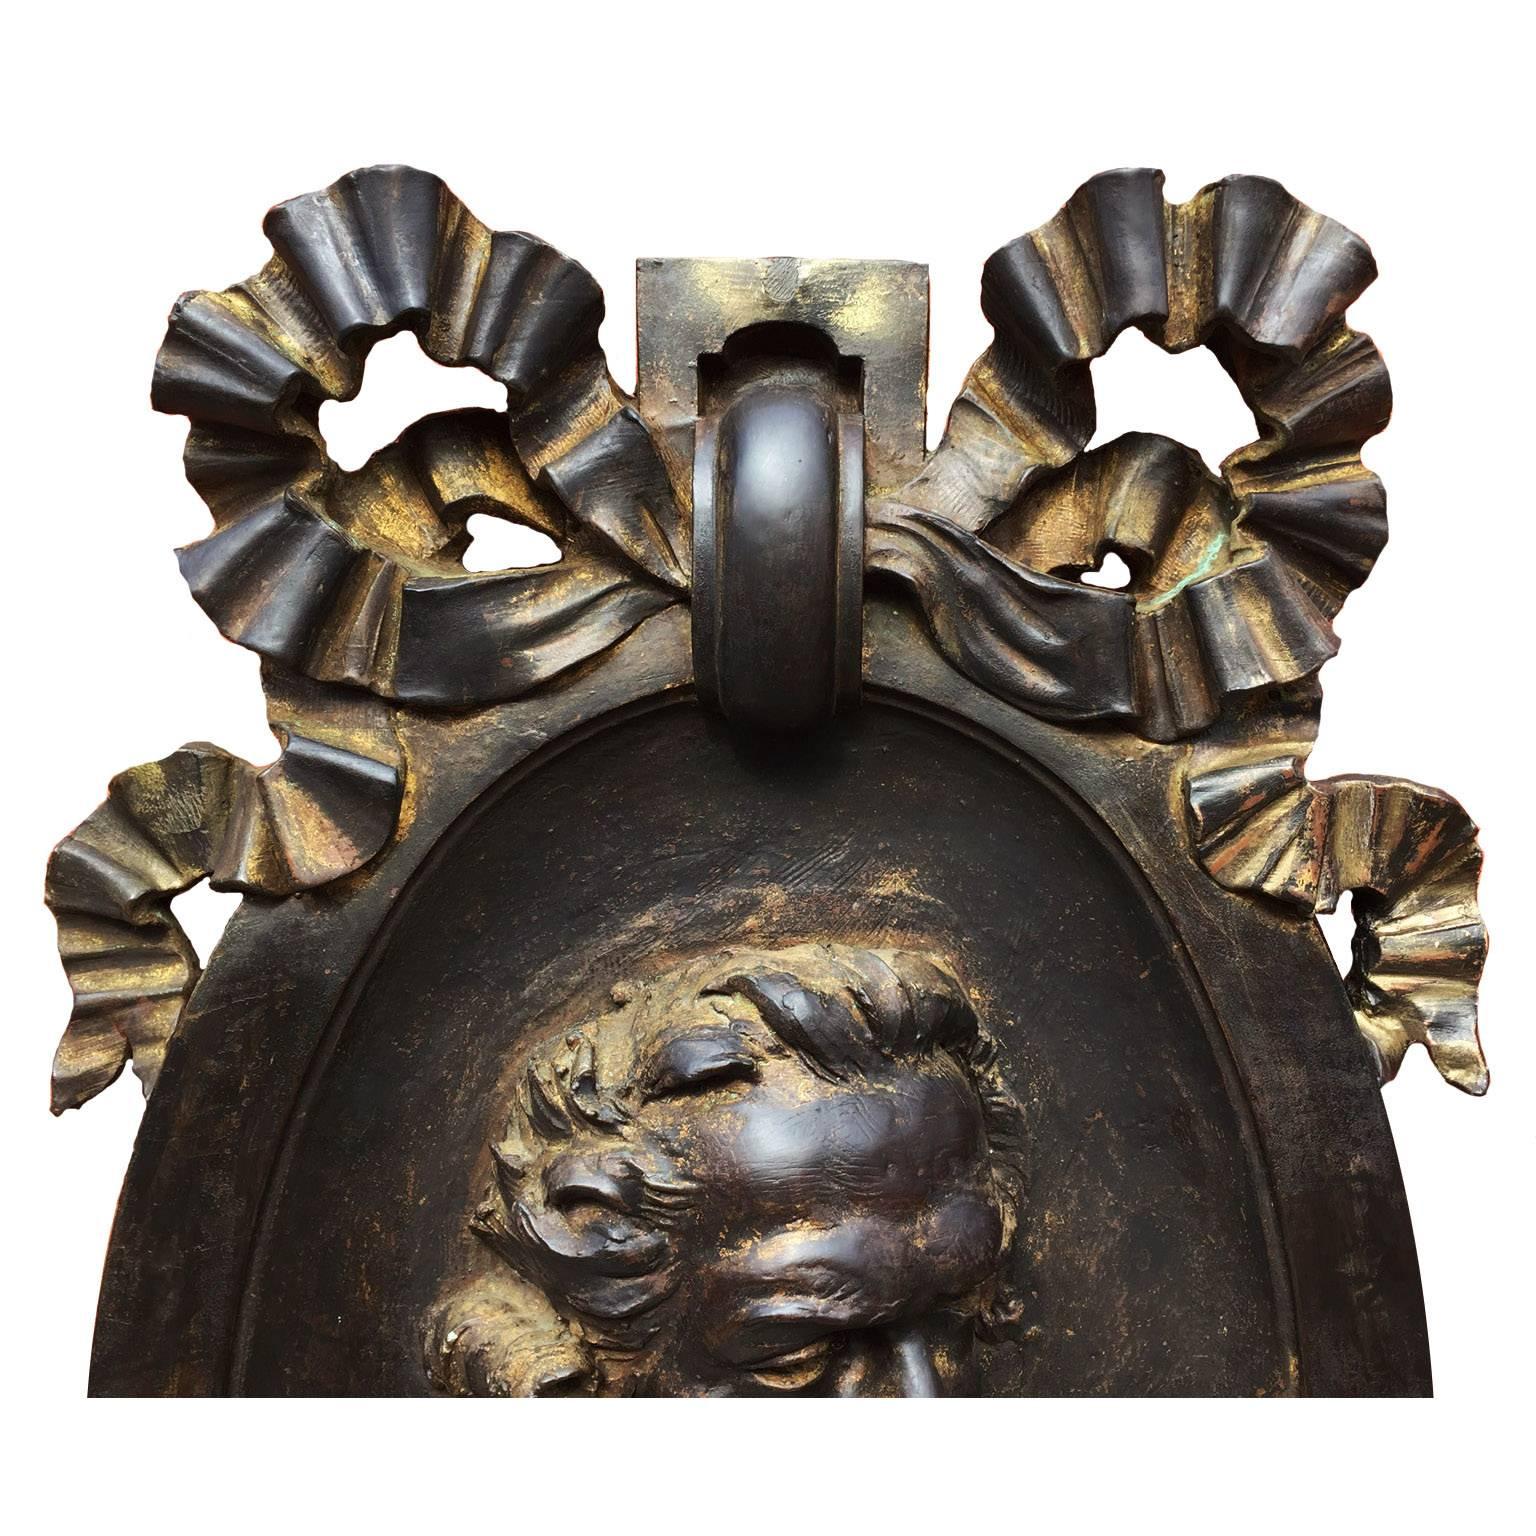 Un grand et rare médaillon en relief du 18ème-19ème siècle en cuivre superposé représentant le célèbre chimiste français ANTOINE LAVOISIER (1743-1794). L'écu de forme ovoïde est couronné d'un grand nœud papillon dans un anneau centré avec le buste